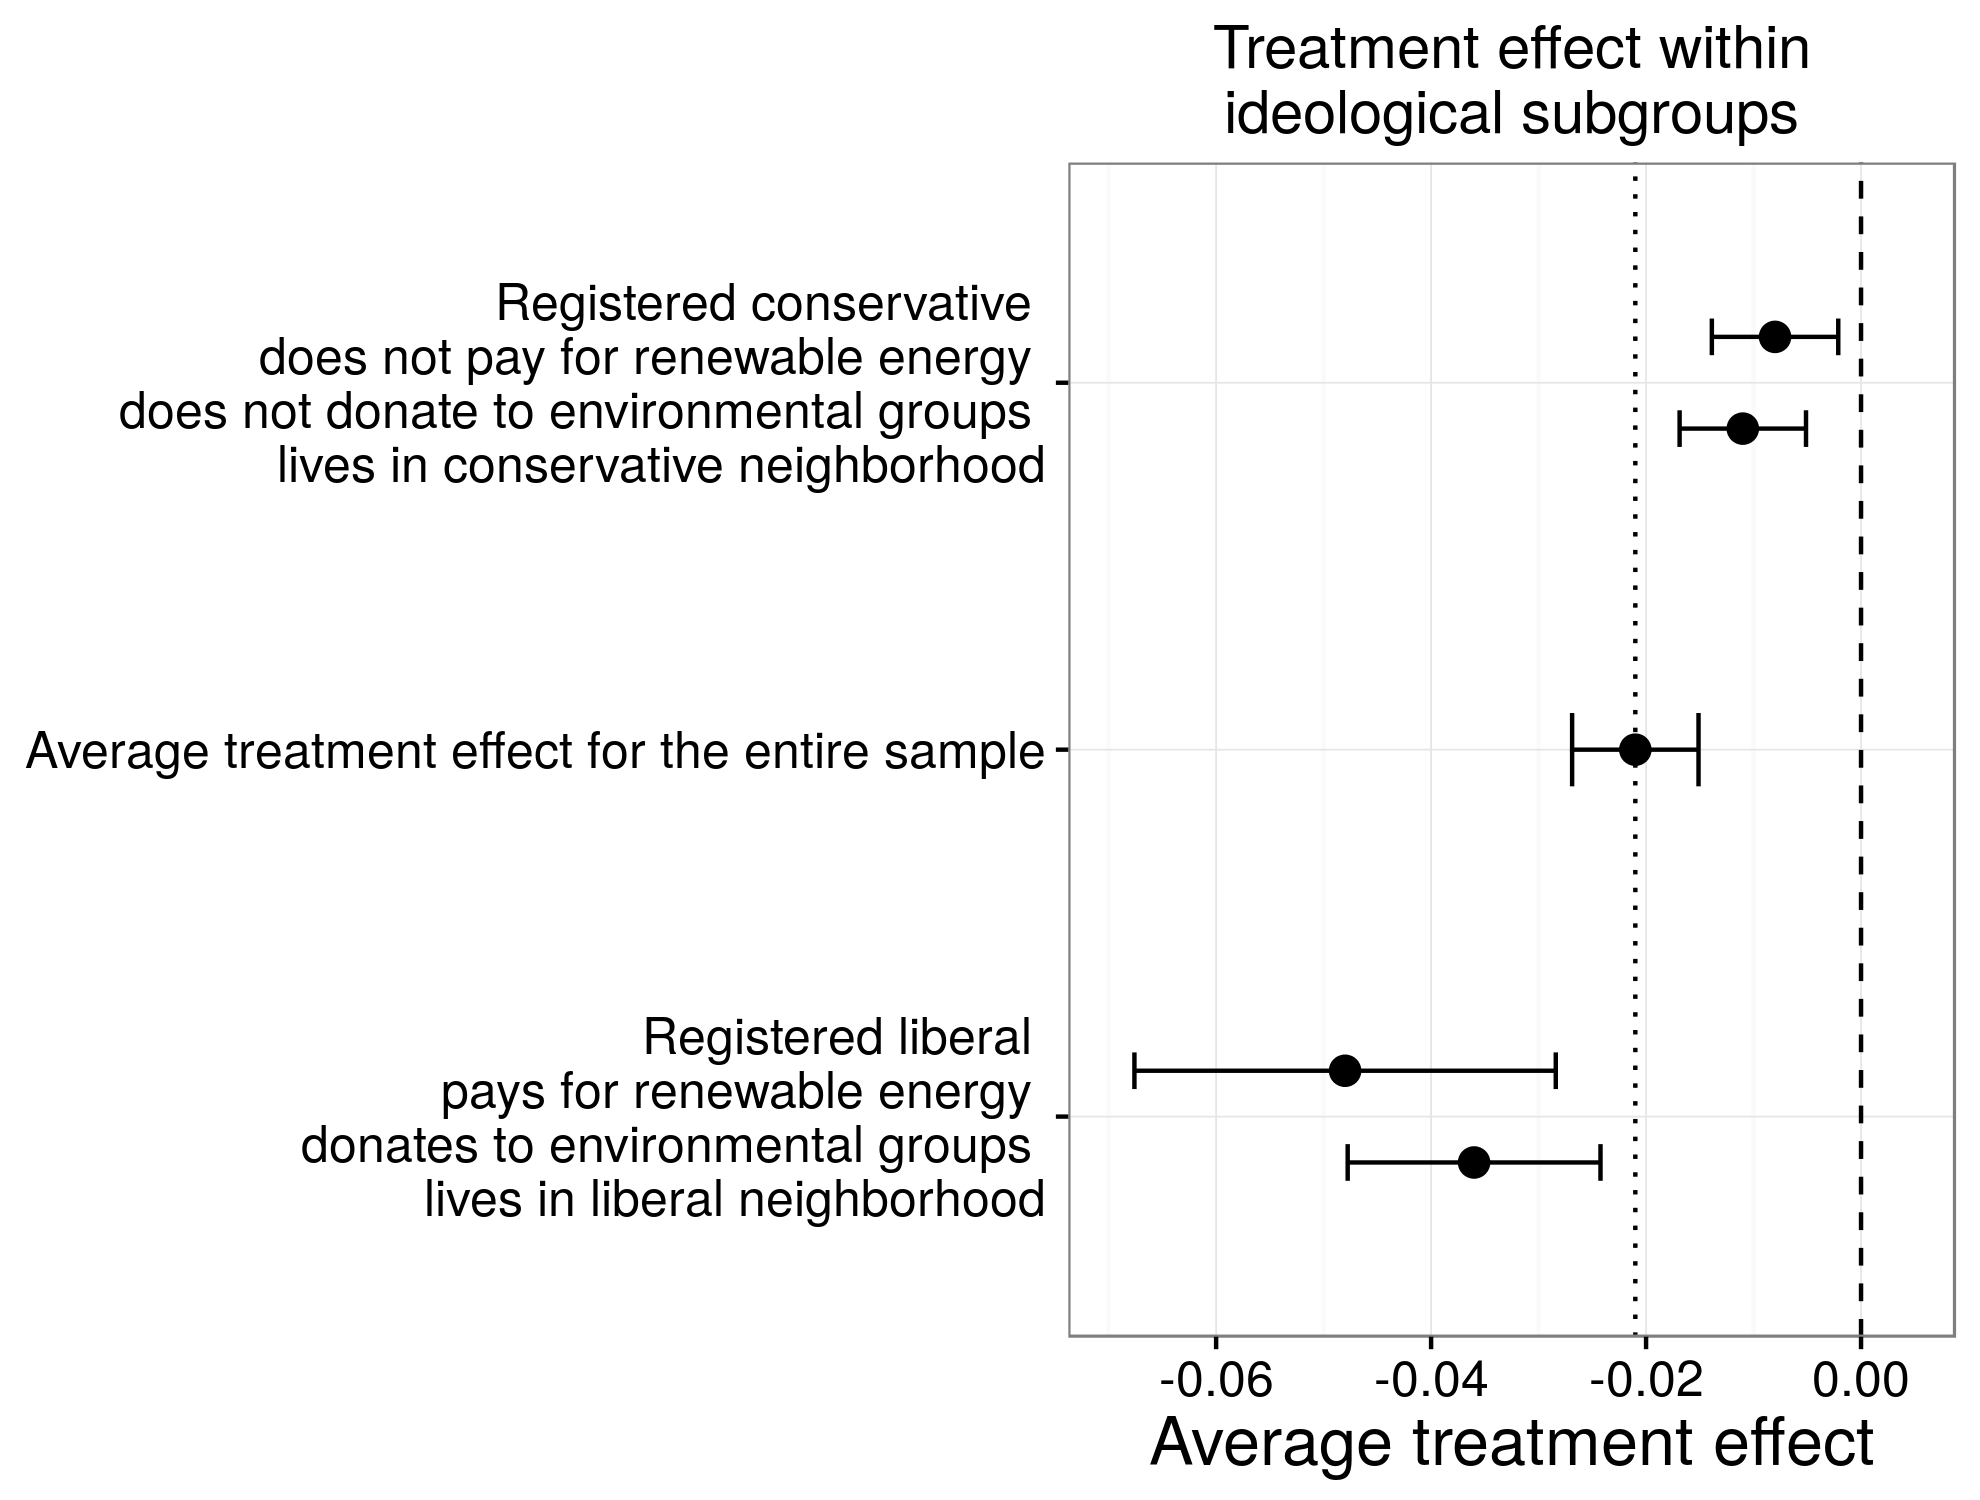 Figur 4.8: Heterogena behandlingseffekter i Costa och Kahn (2013). Den beräknade genomsnittliga behandlingseffekten för hela provet är -2,1% [-1,5% -2,7%]. Genom att kombinera information från försöket med information om hushållen, Costa och Kahn (2013) använde en serie av statistiska modeller för att uppskatta behandlingseffekten för mycket specifika grupper av människor. Två beräkningar presenteras för varje grupp eftersom beräkningarna beror på covariates de ingår i deras statistiska modeller (se modell 4 och modell 6 i tabell 3 och tabell 4 i Costa och Kahn (2013)). Som detta exempel visar, kan behandlingseffekter vara olika för olika människor och uppskattningar av behandlingseffekter som kommer från statistiska modeller kan bero på detaljerna i dessa modeller (Grimmer, Messing, och Westwood 2014).